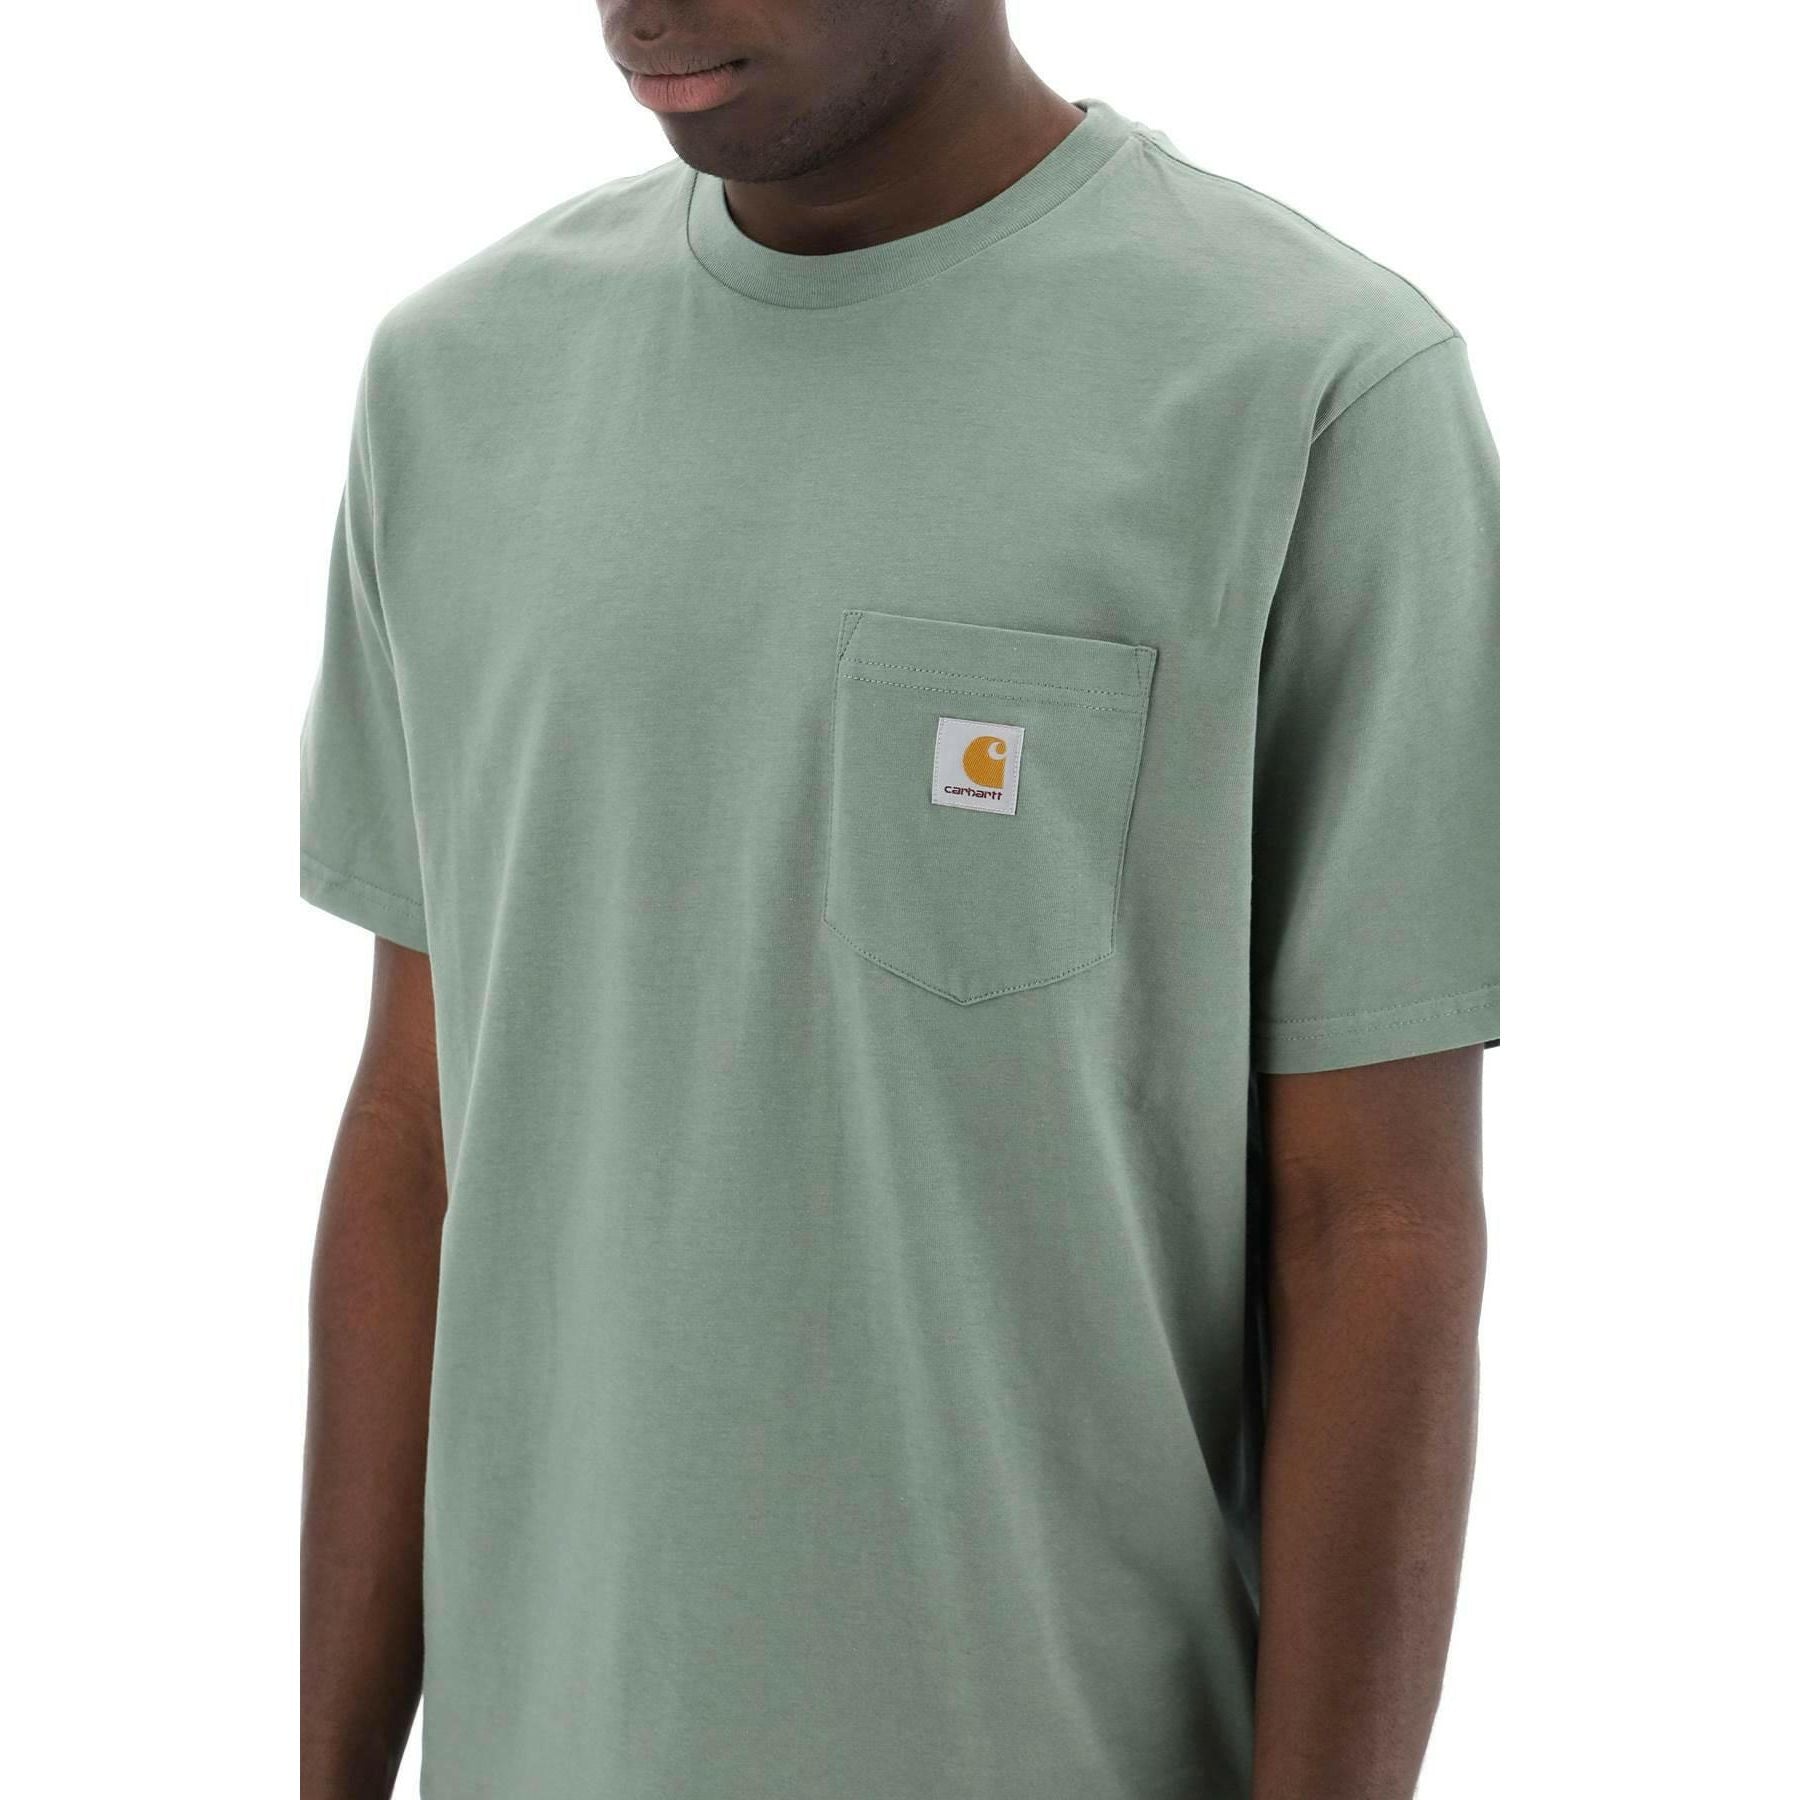 Park Green Cotton T-Shirt with Chest Pocket CARHARTT WIP JOHN JULIA.